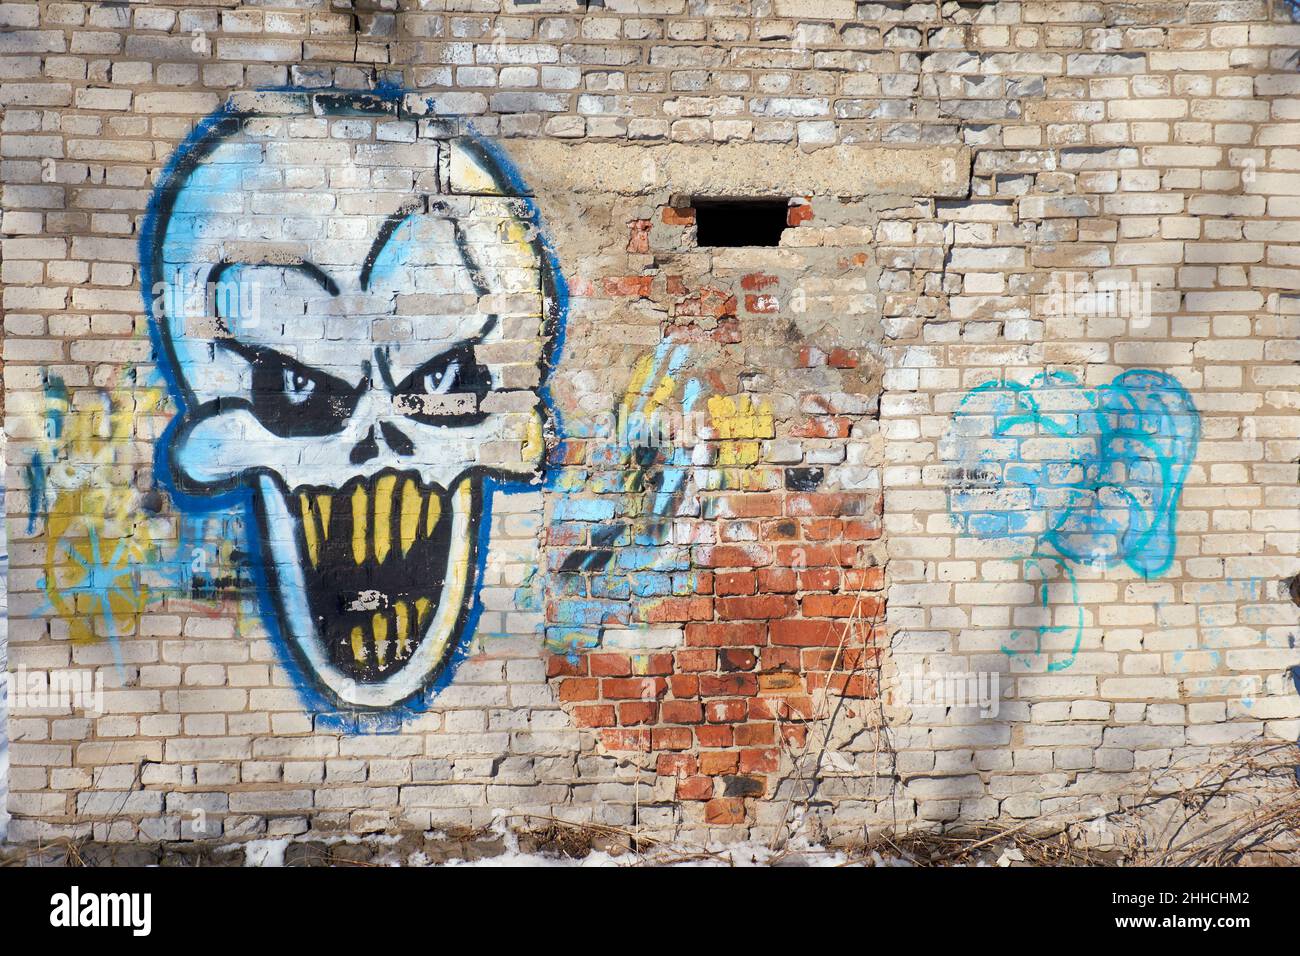 Novosibirsk Russia - 13 marzo 2020: Graffiti sul muro. Immagine di un clown malvagio su un muro di mattoni. Foto Stock